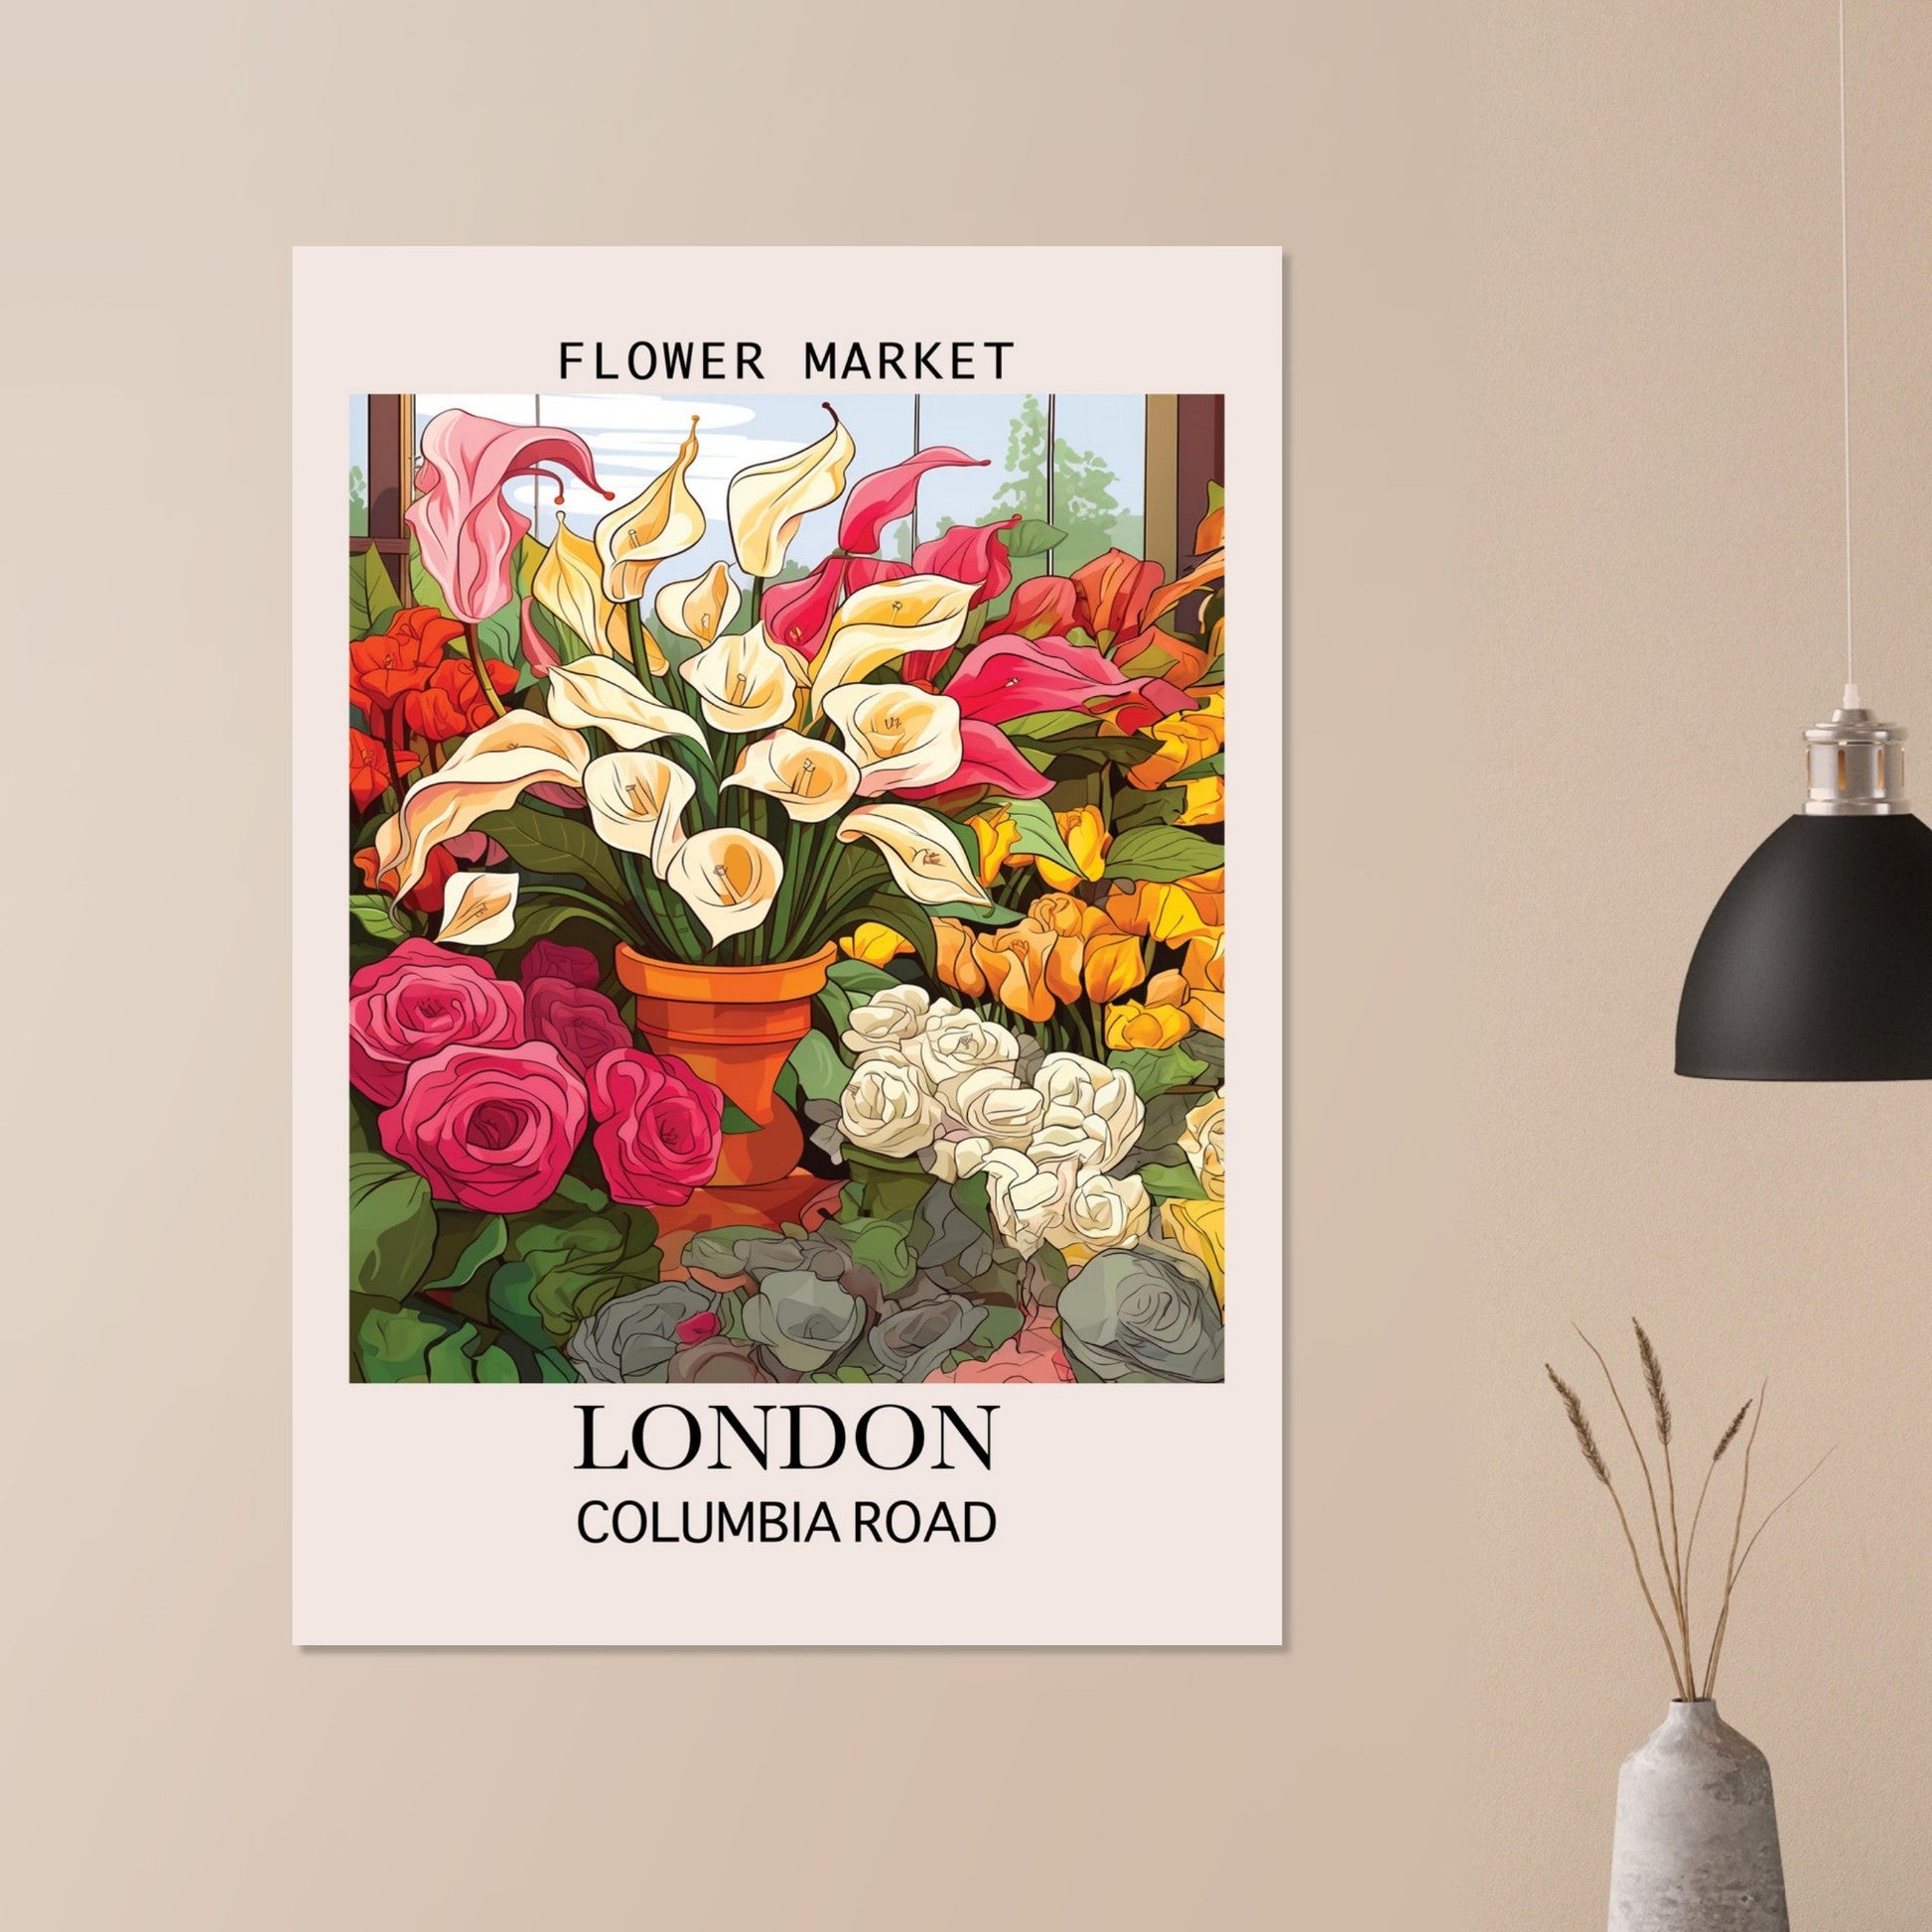 Flower Market London, Columbia Road, Flower Market, London, #illieeart